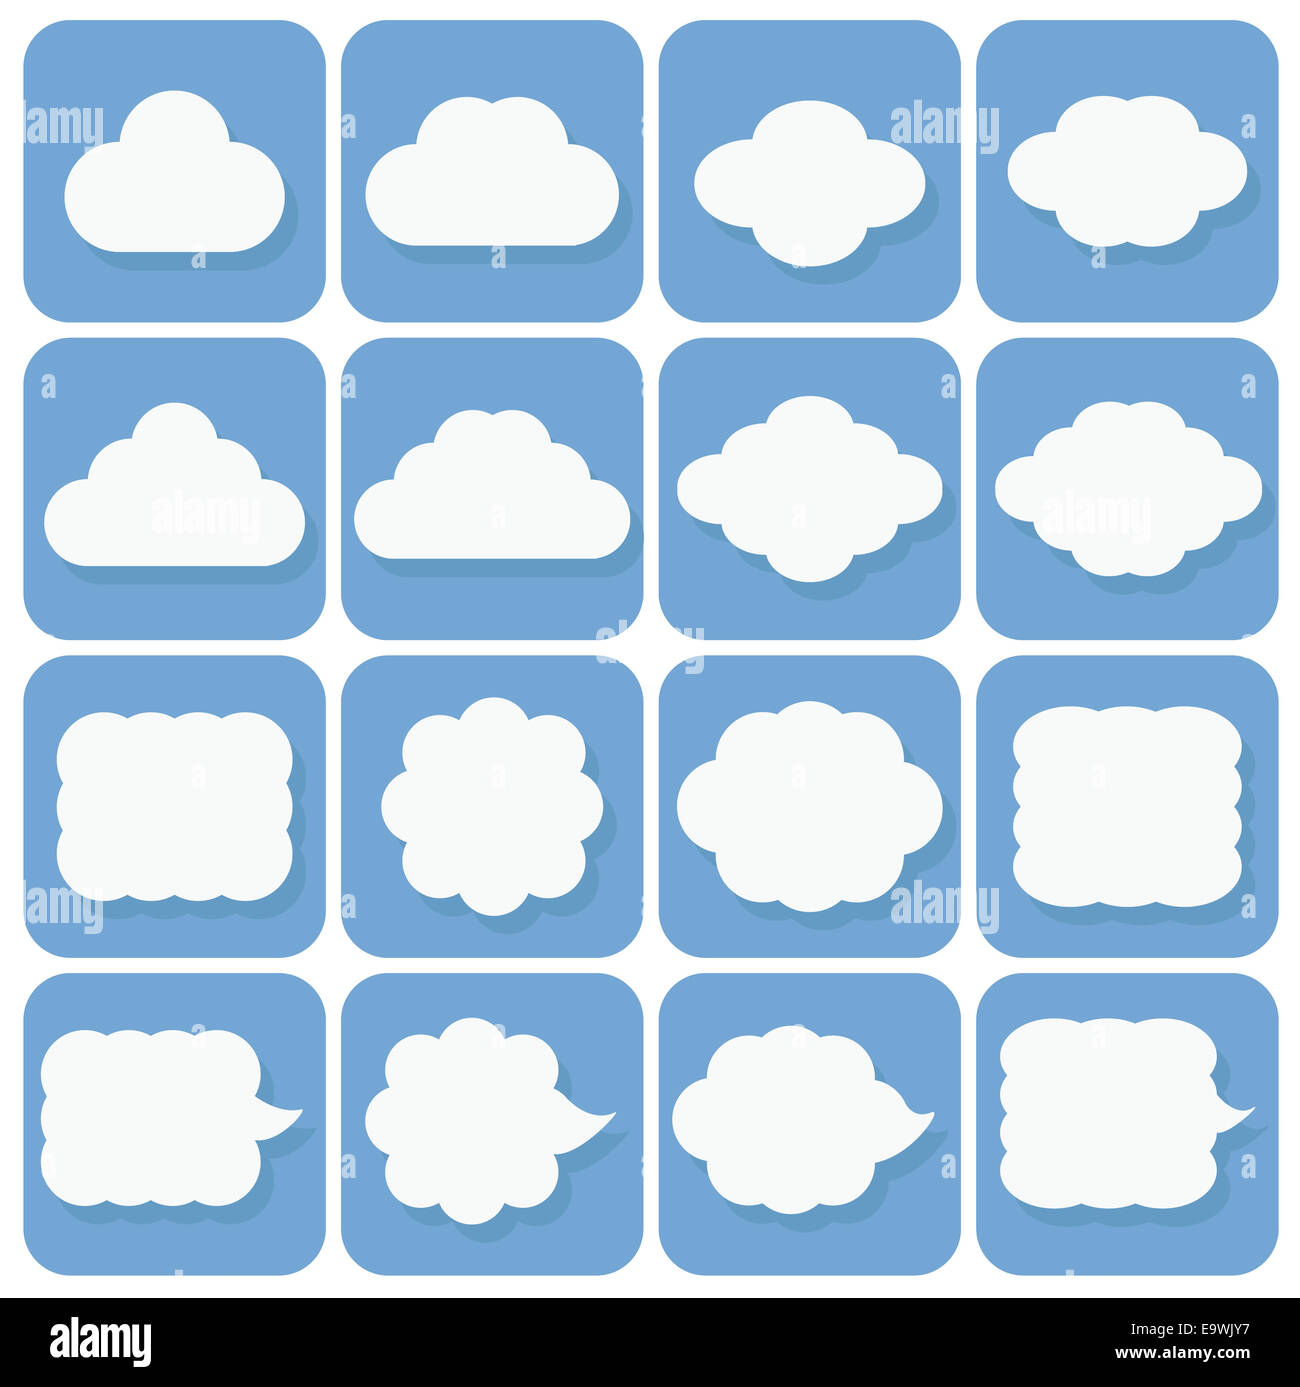 Vector icon set, collection d'icônes, nuage blanc sur fond bleu avec des ombres bleu foncé Banque D'Images